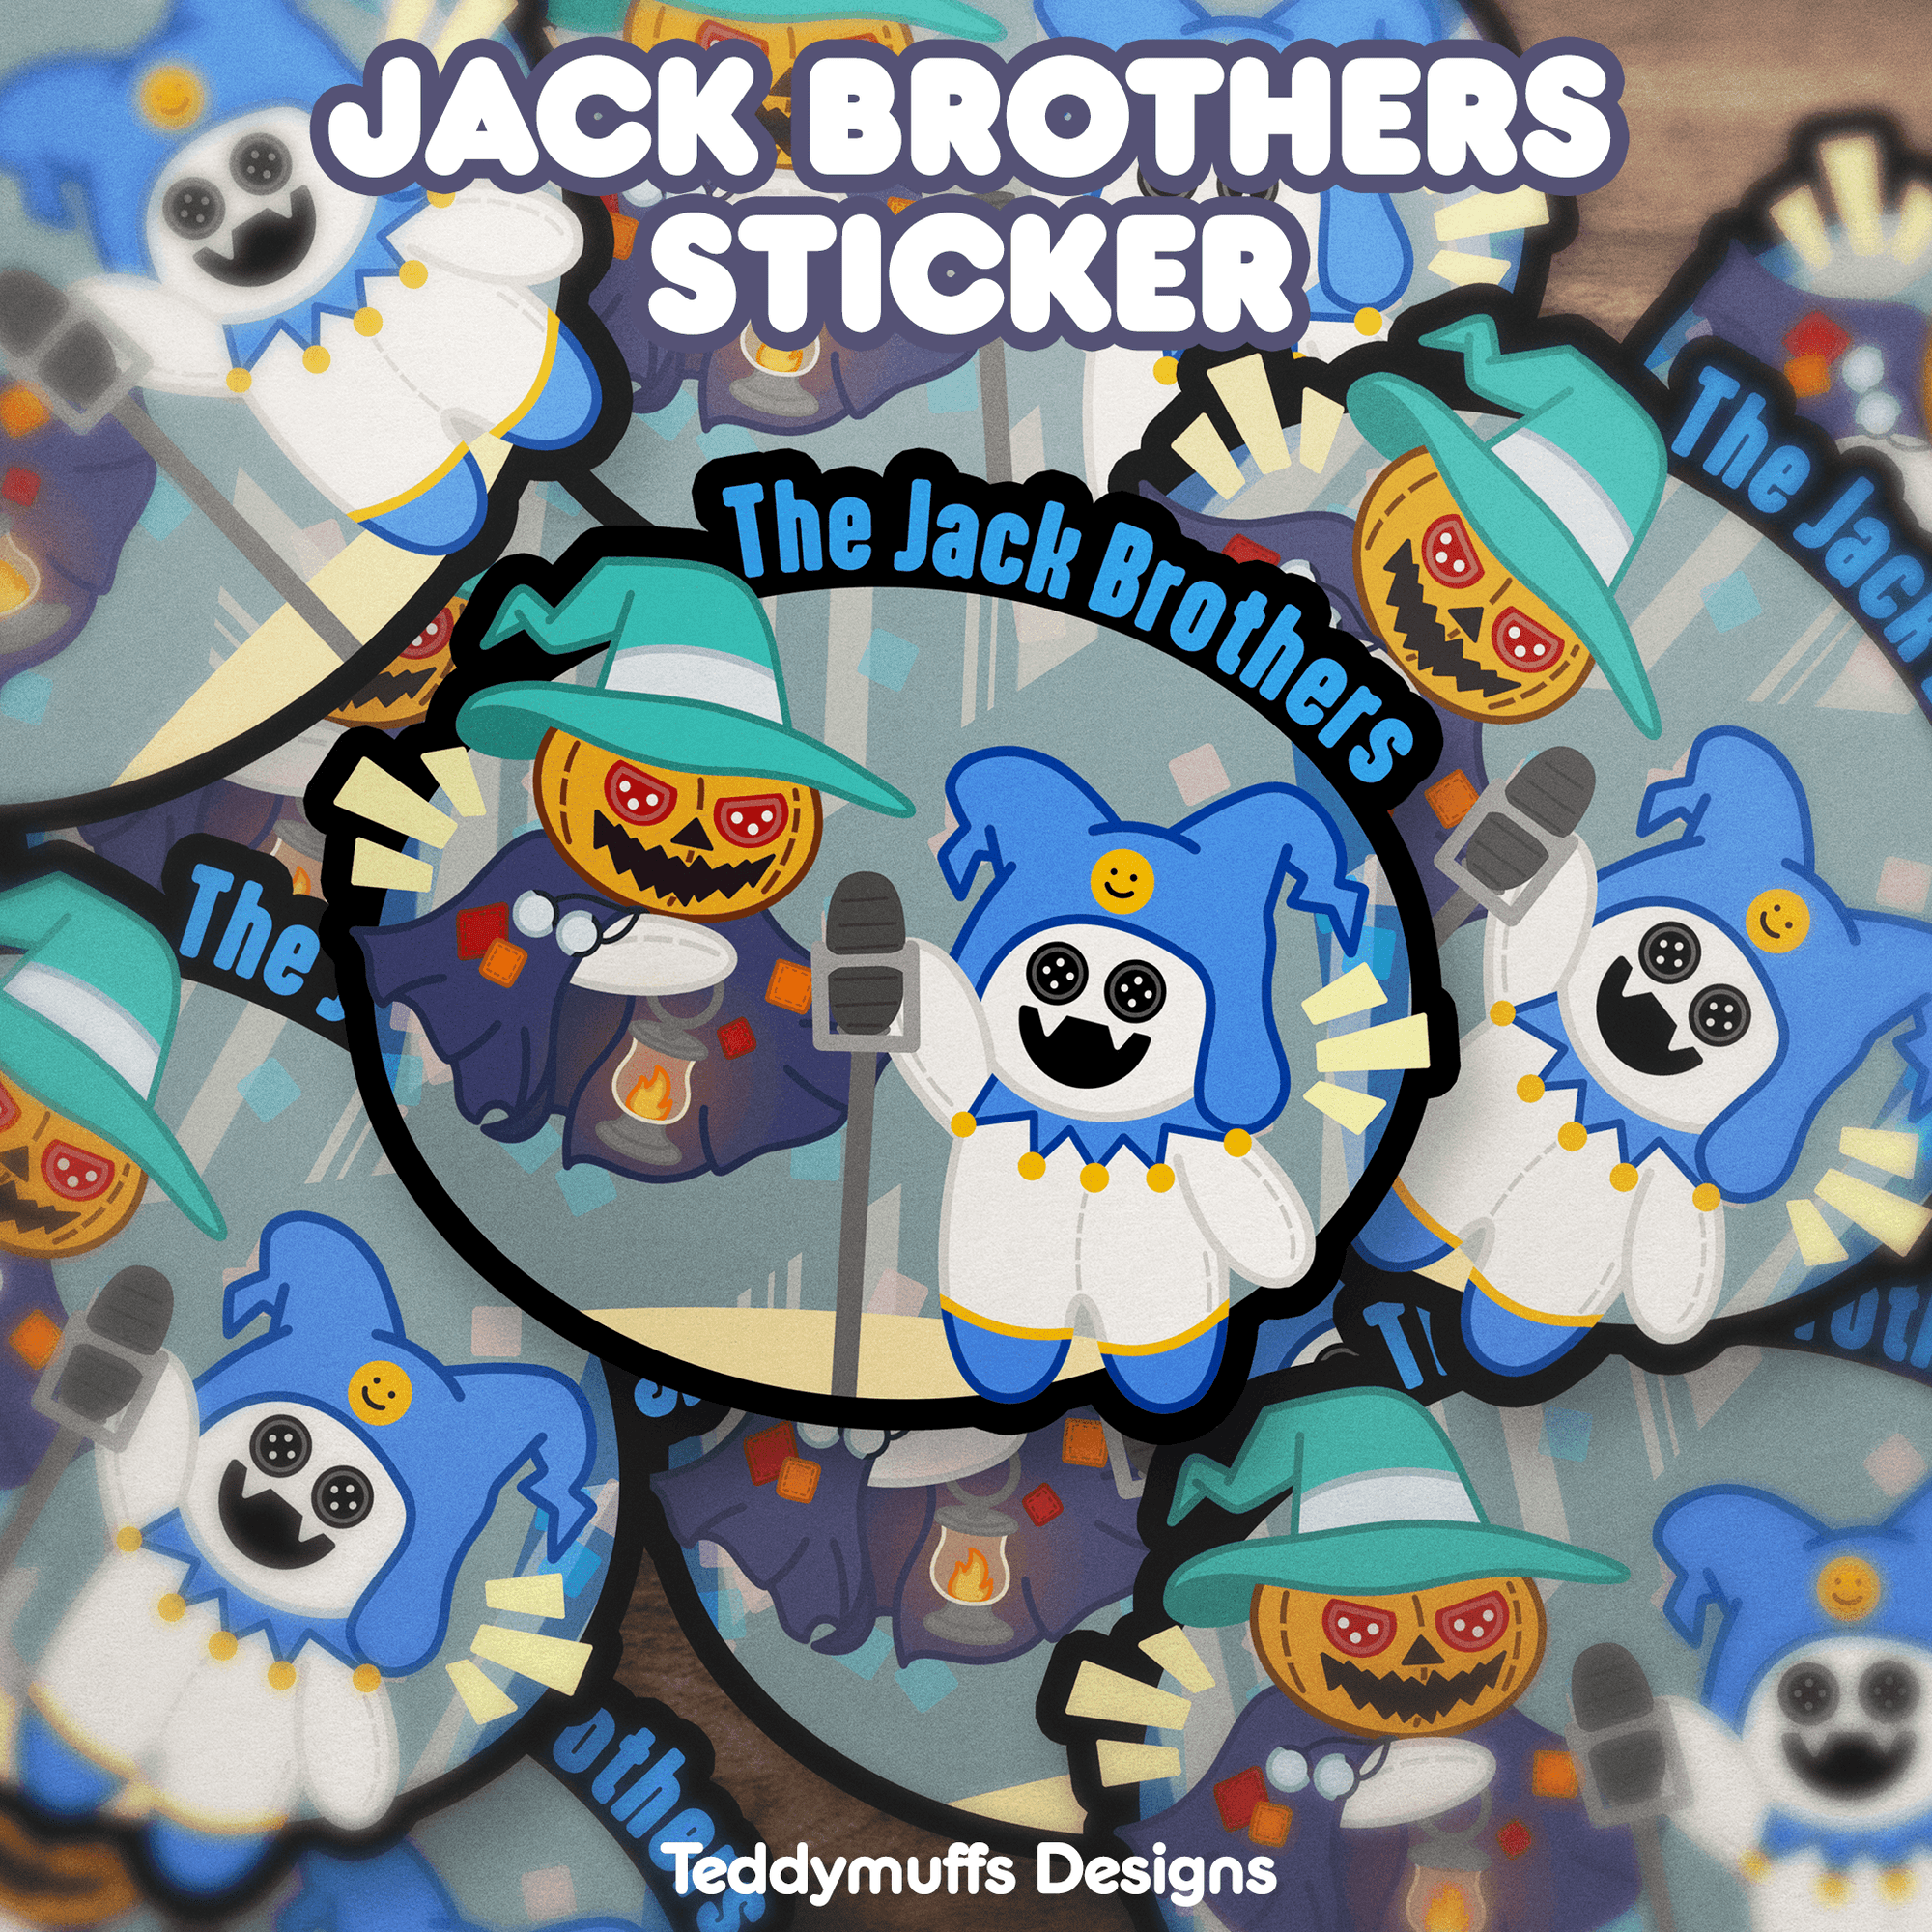 Jack Brothers (Pyro Jack & Jack Frost) Sticker - Teddymuffs Designs